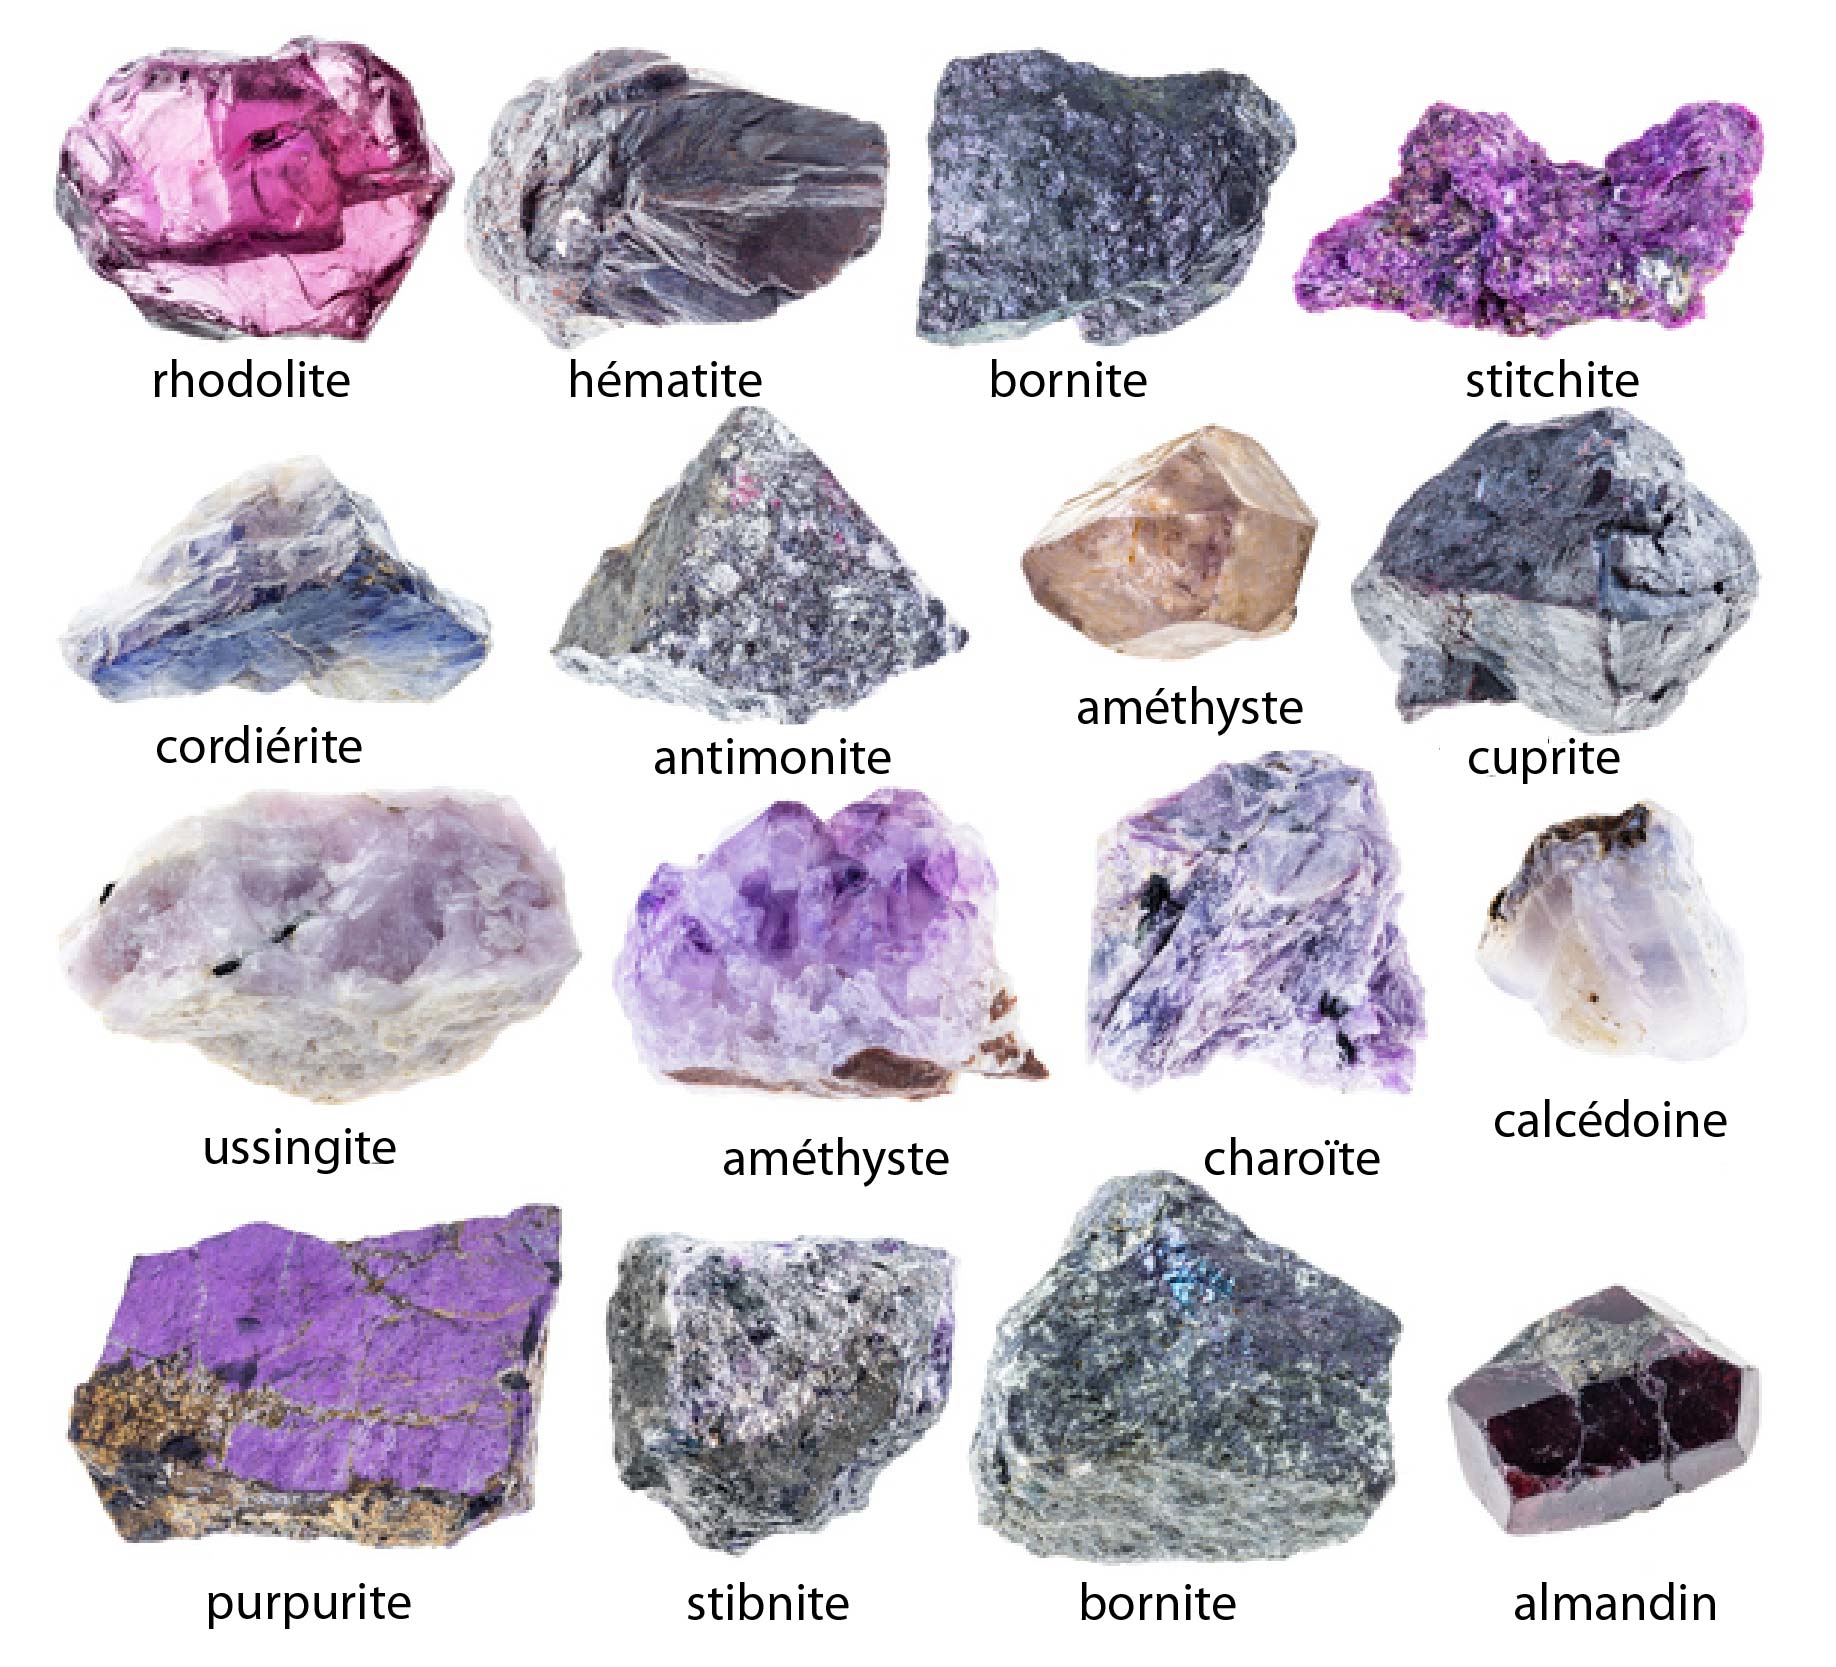 On voit ici un tableau de photographies en couleur de 16 minéraux dans différentes nuances de violet, de rose et de bleu